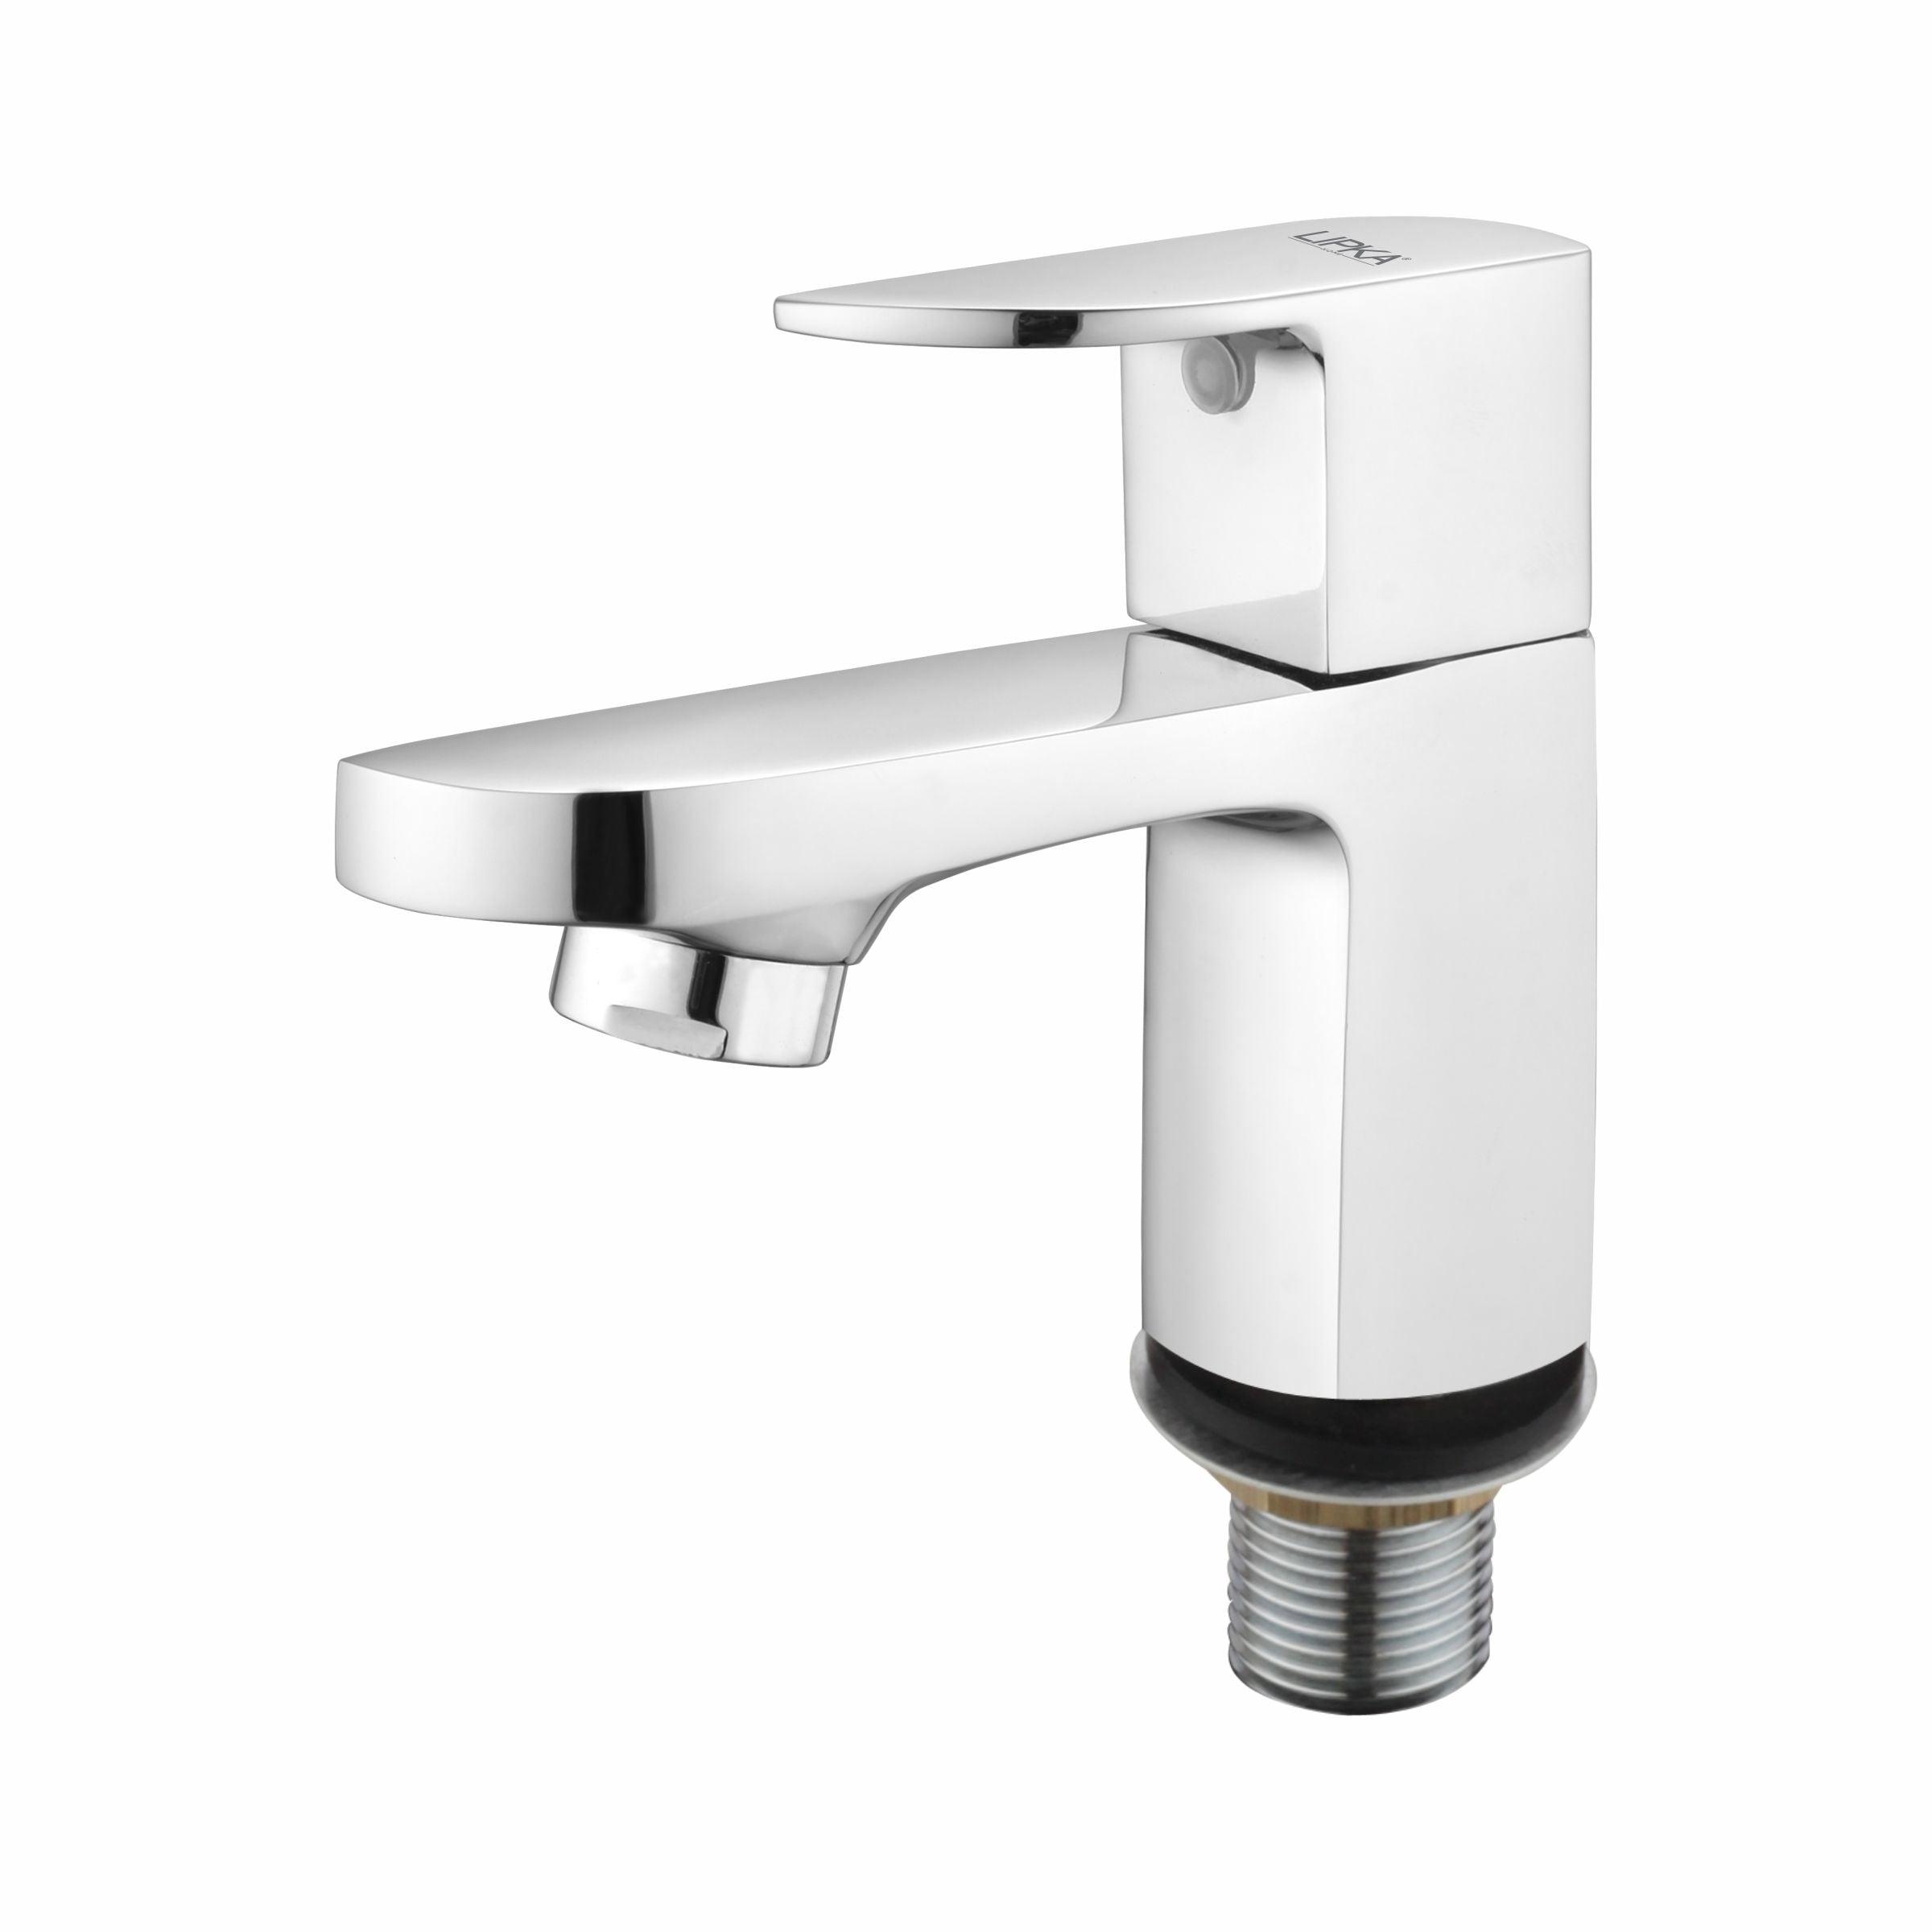 Arise Pillar Tap Brass Faucet - LIPKA - Lipka Home